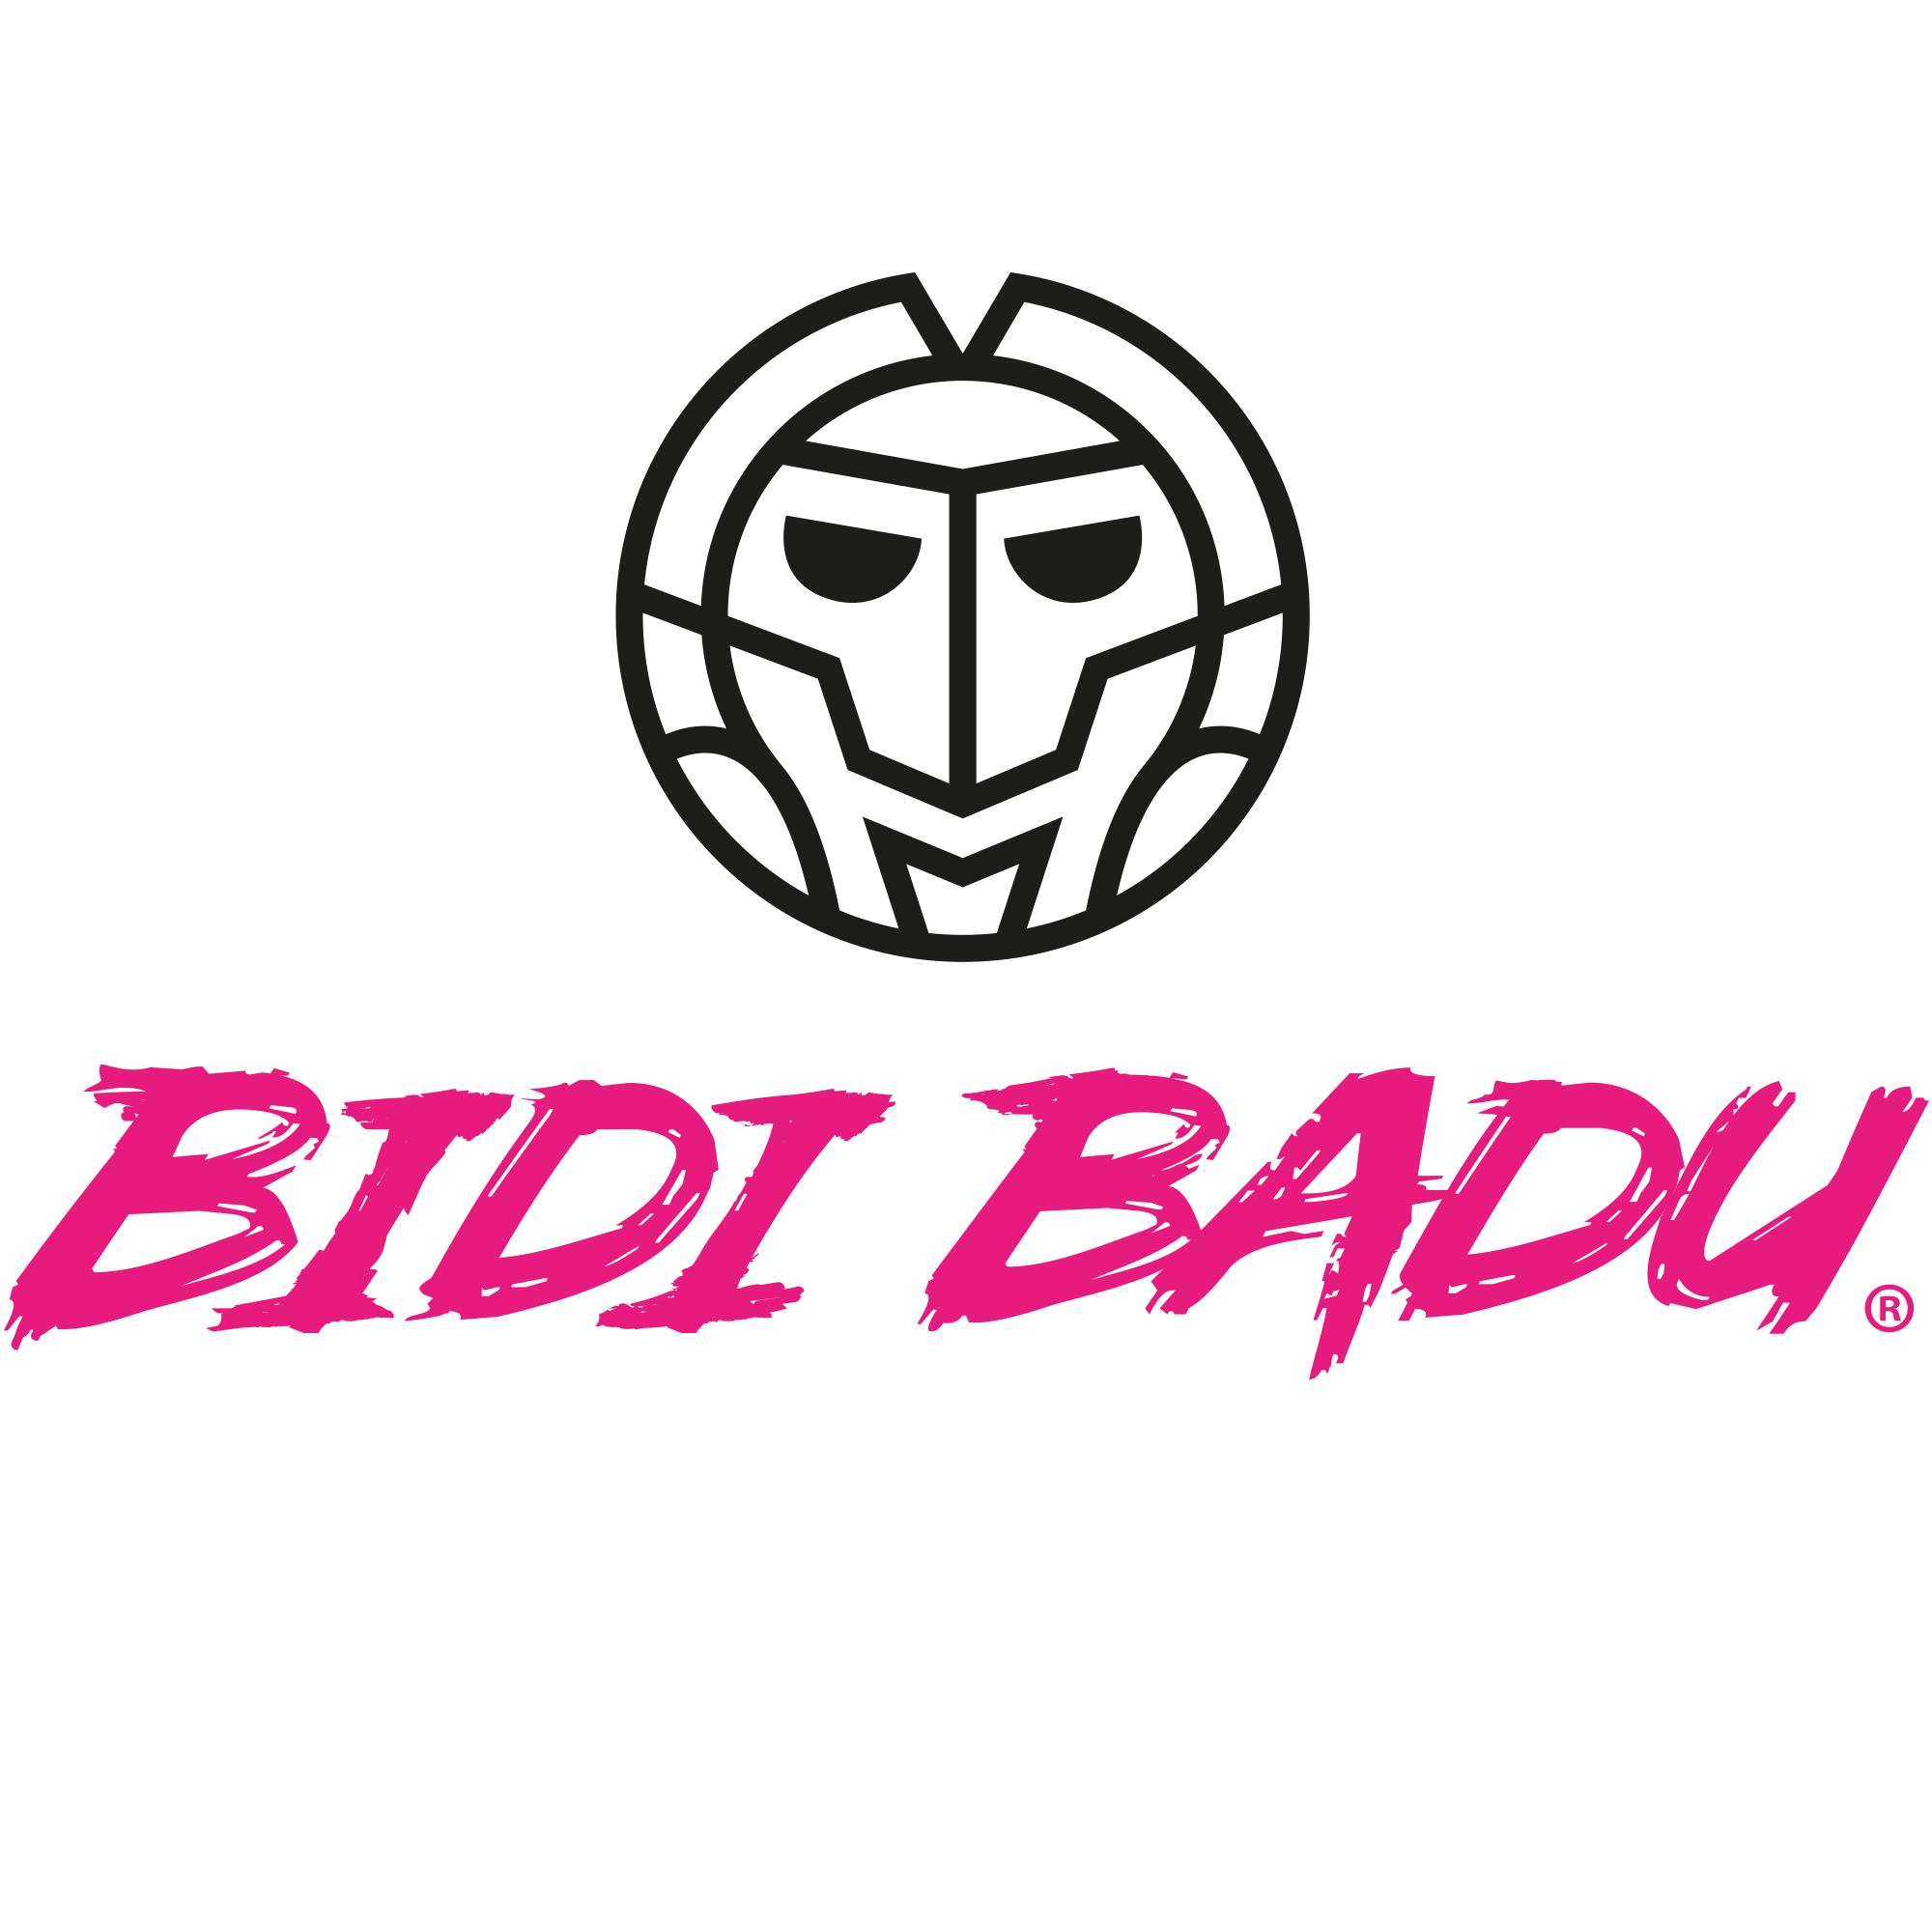 Weitere Artikel von BIDI BADU